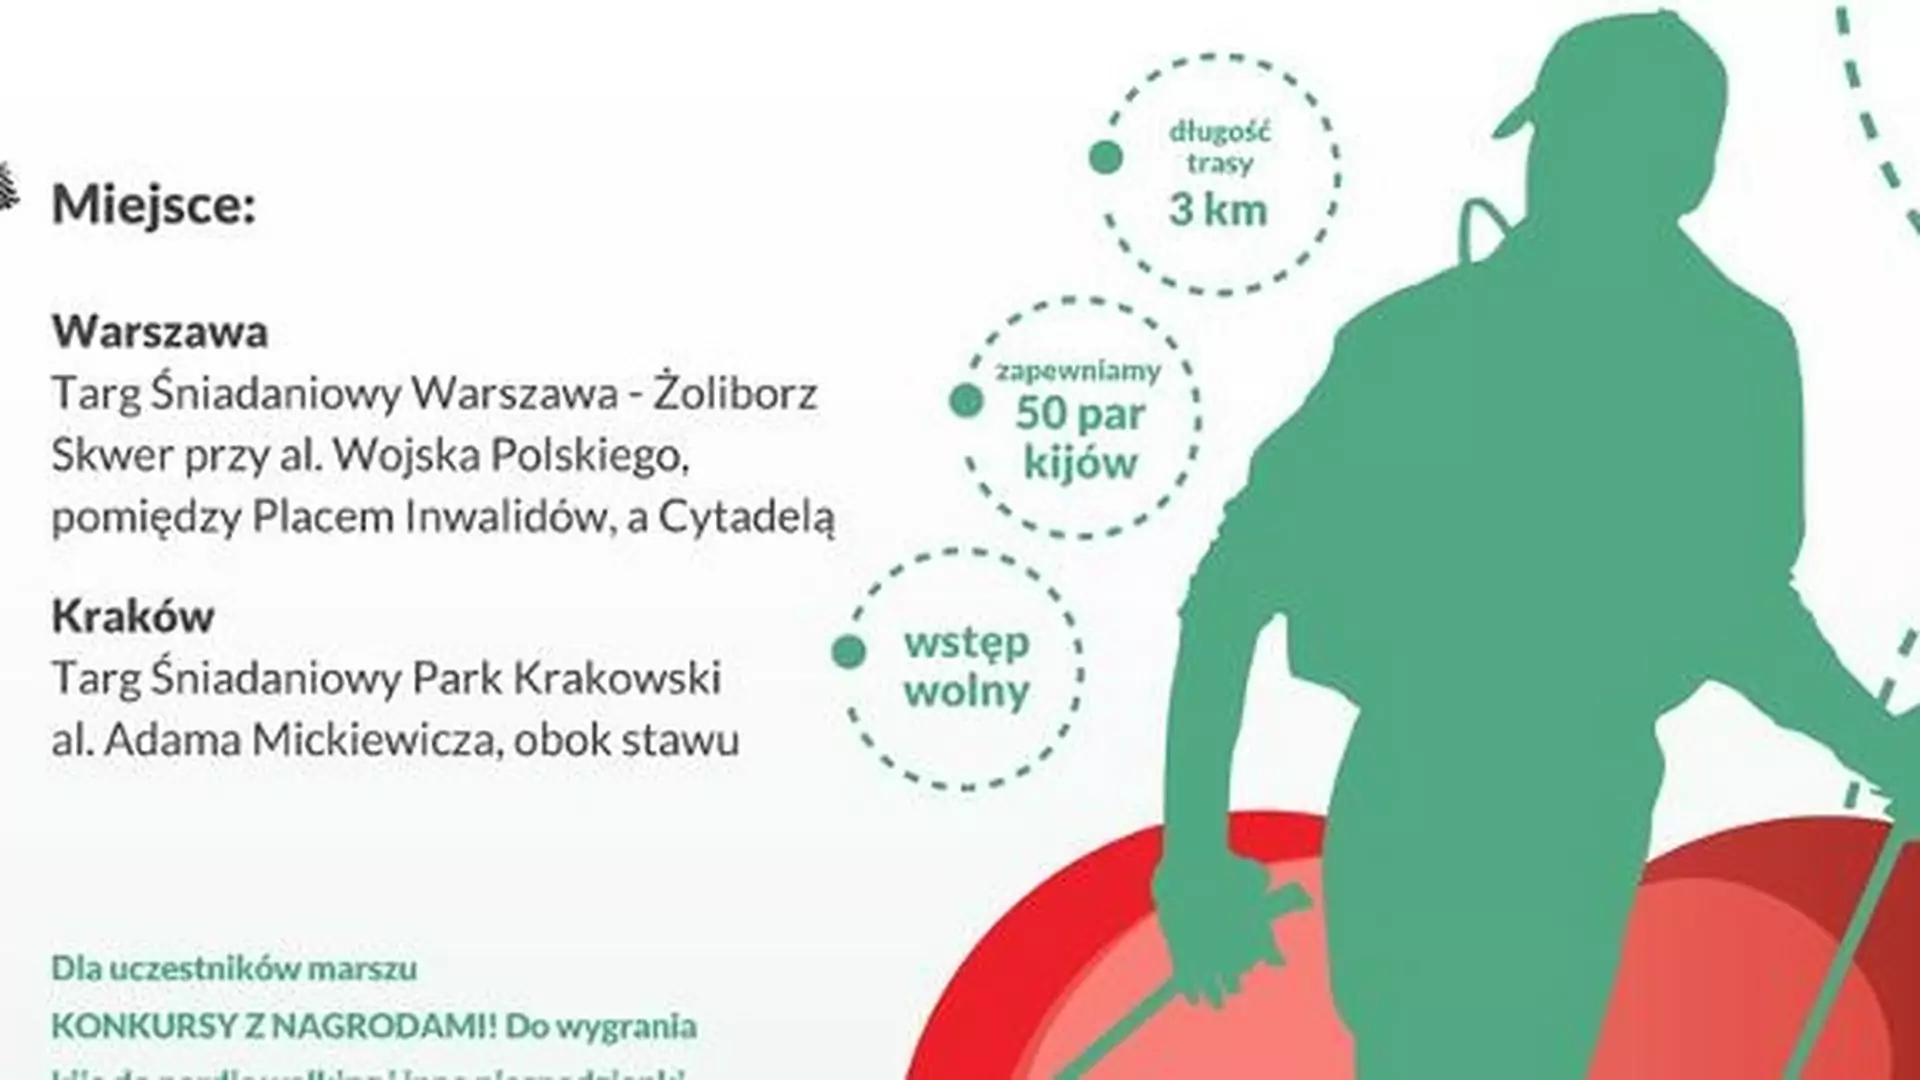 Maszeruj po zdrowie! Weź udział w akcji "Mam Dobry Cholesterol" Nordic Walking